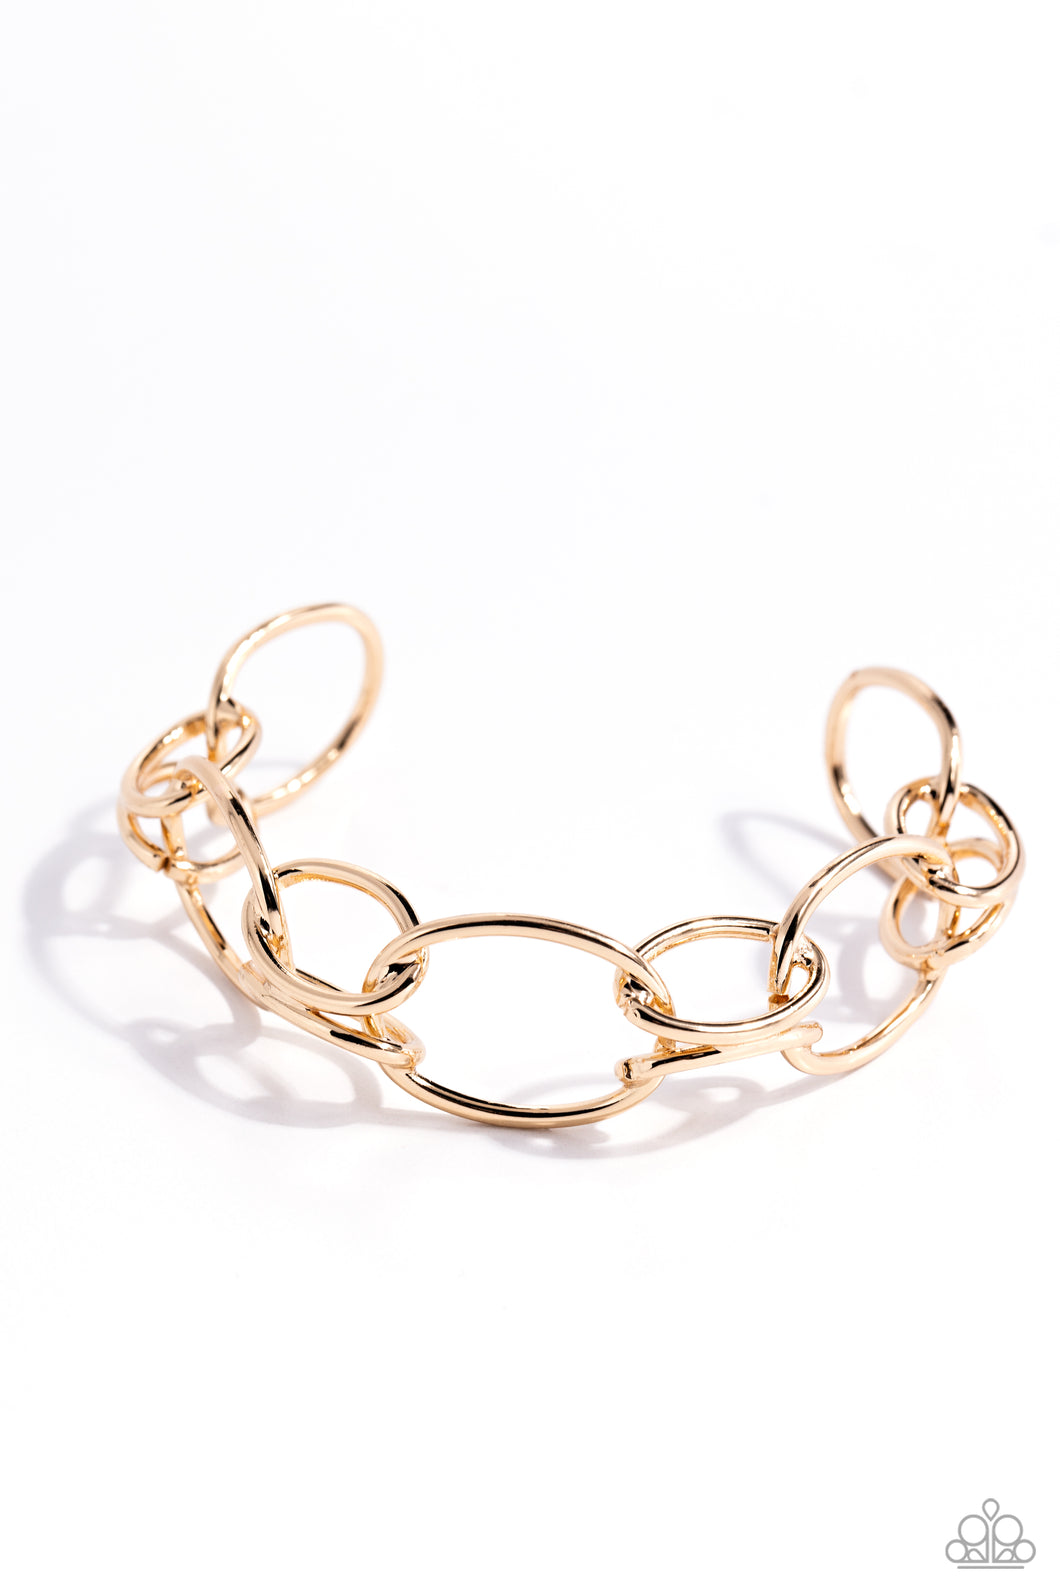 LINK or Swim - Gold Bracelet